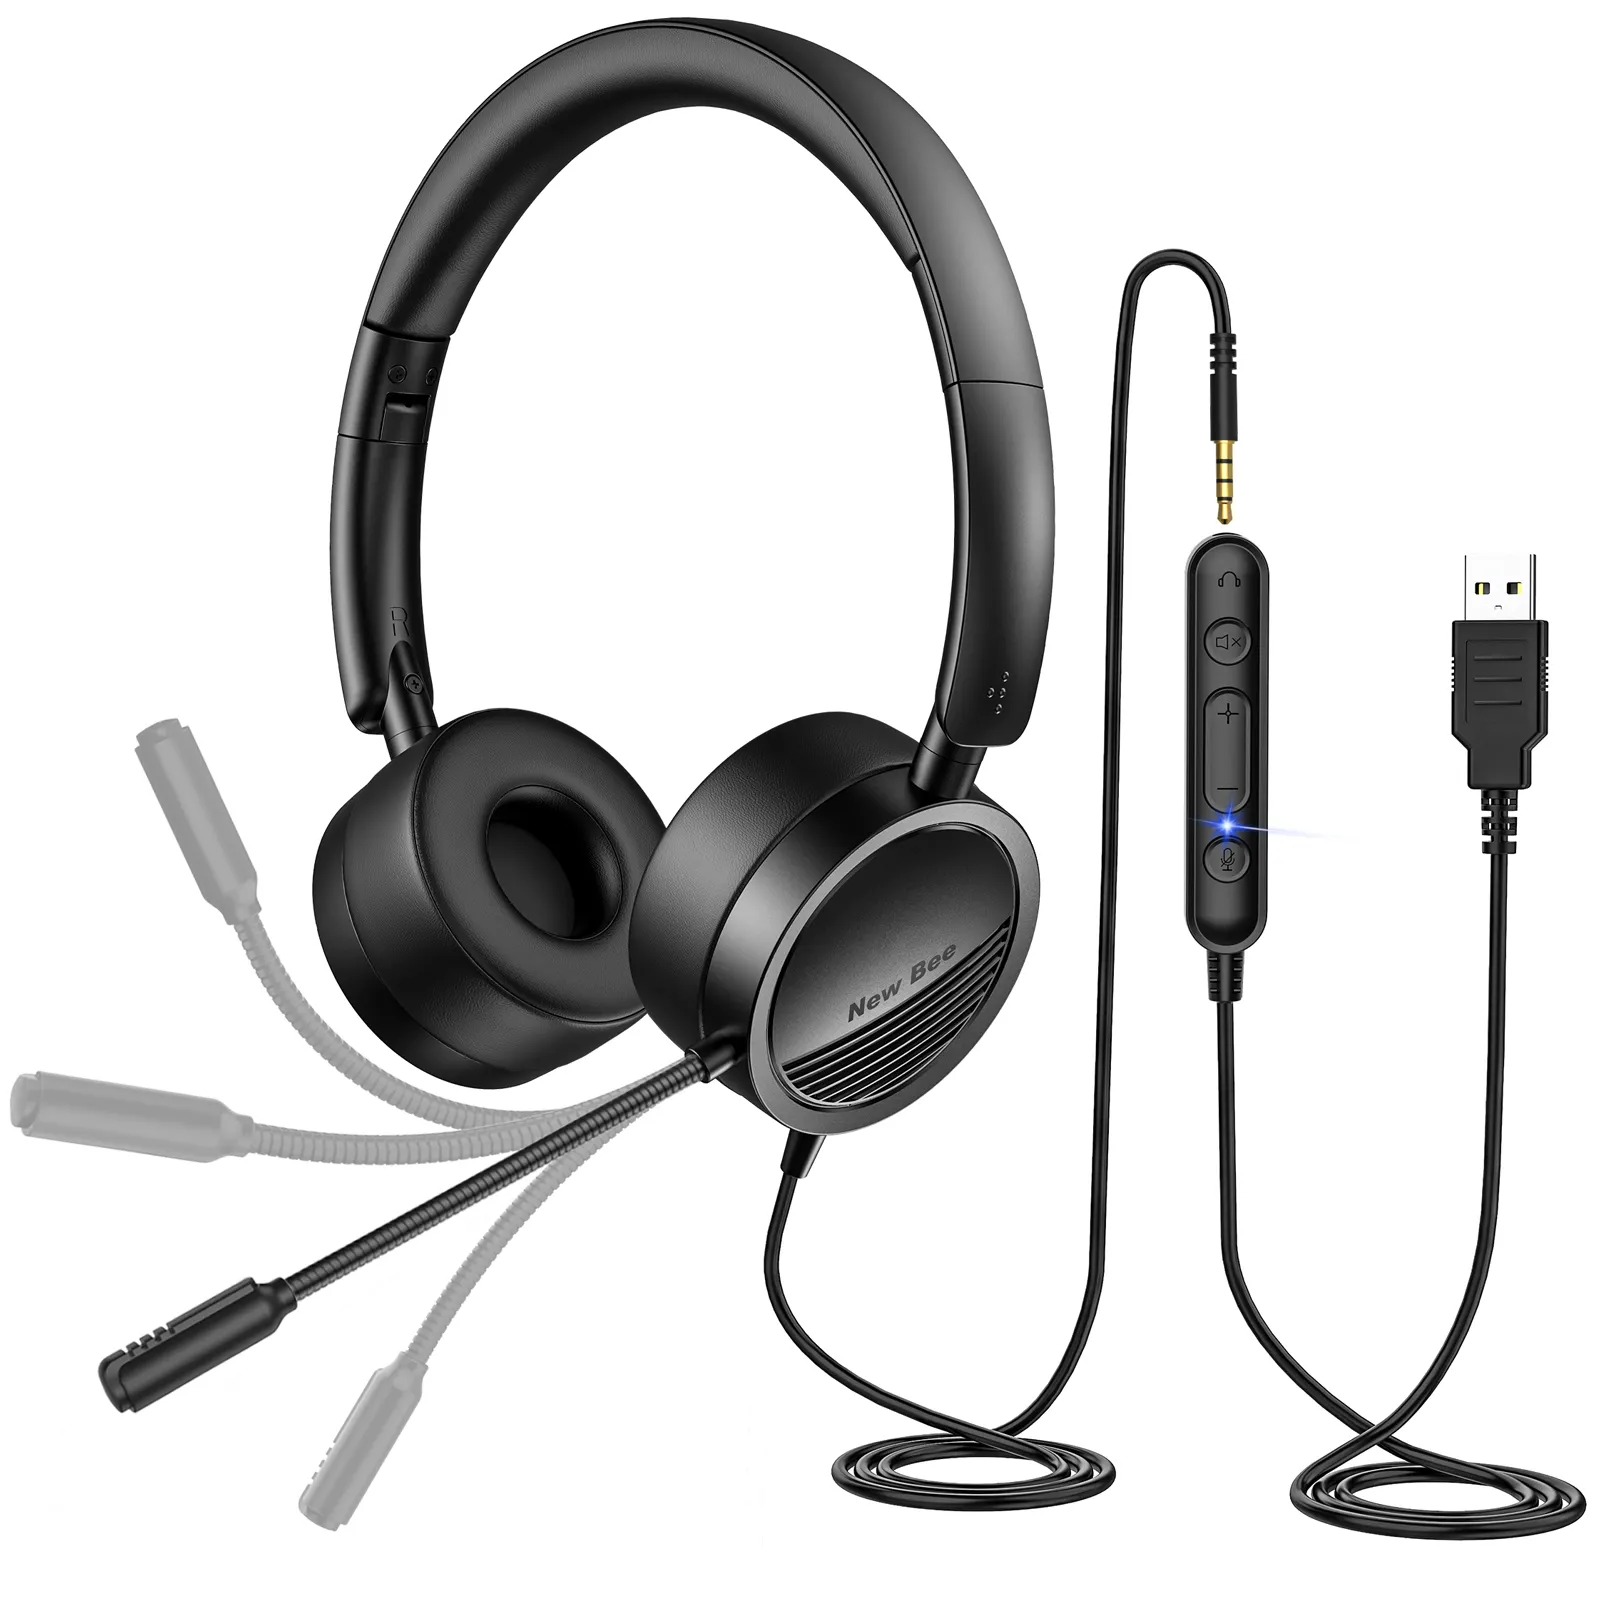 Vivibee-casque d'écoute filaire H360 sur l'oreille, pour ordinateurs, PC, téléphone, USB, casque d'écoute avec micro, nouvelle collection